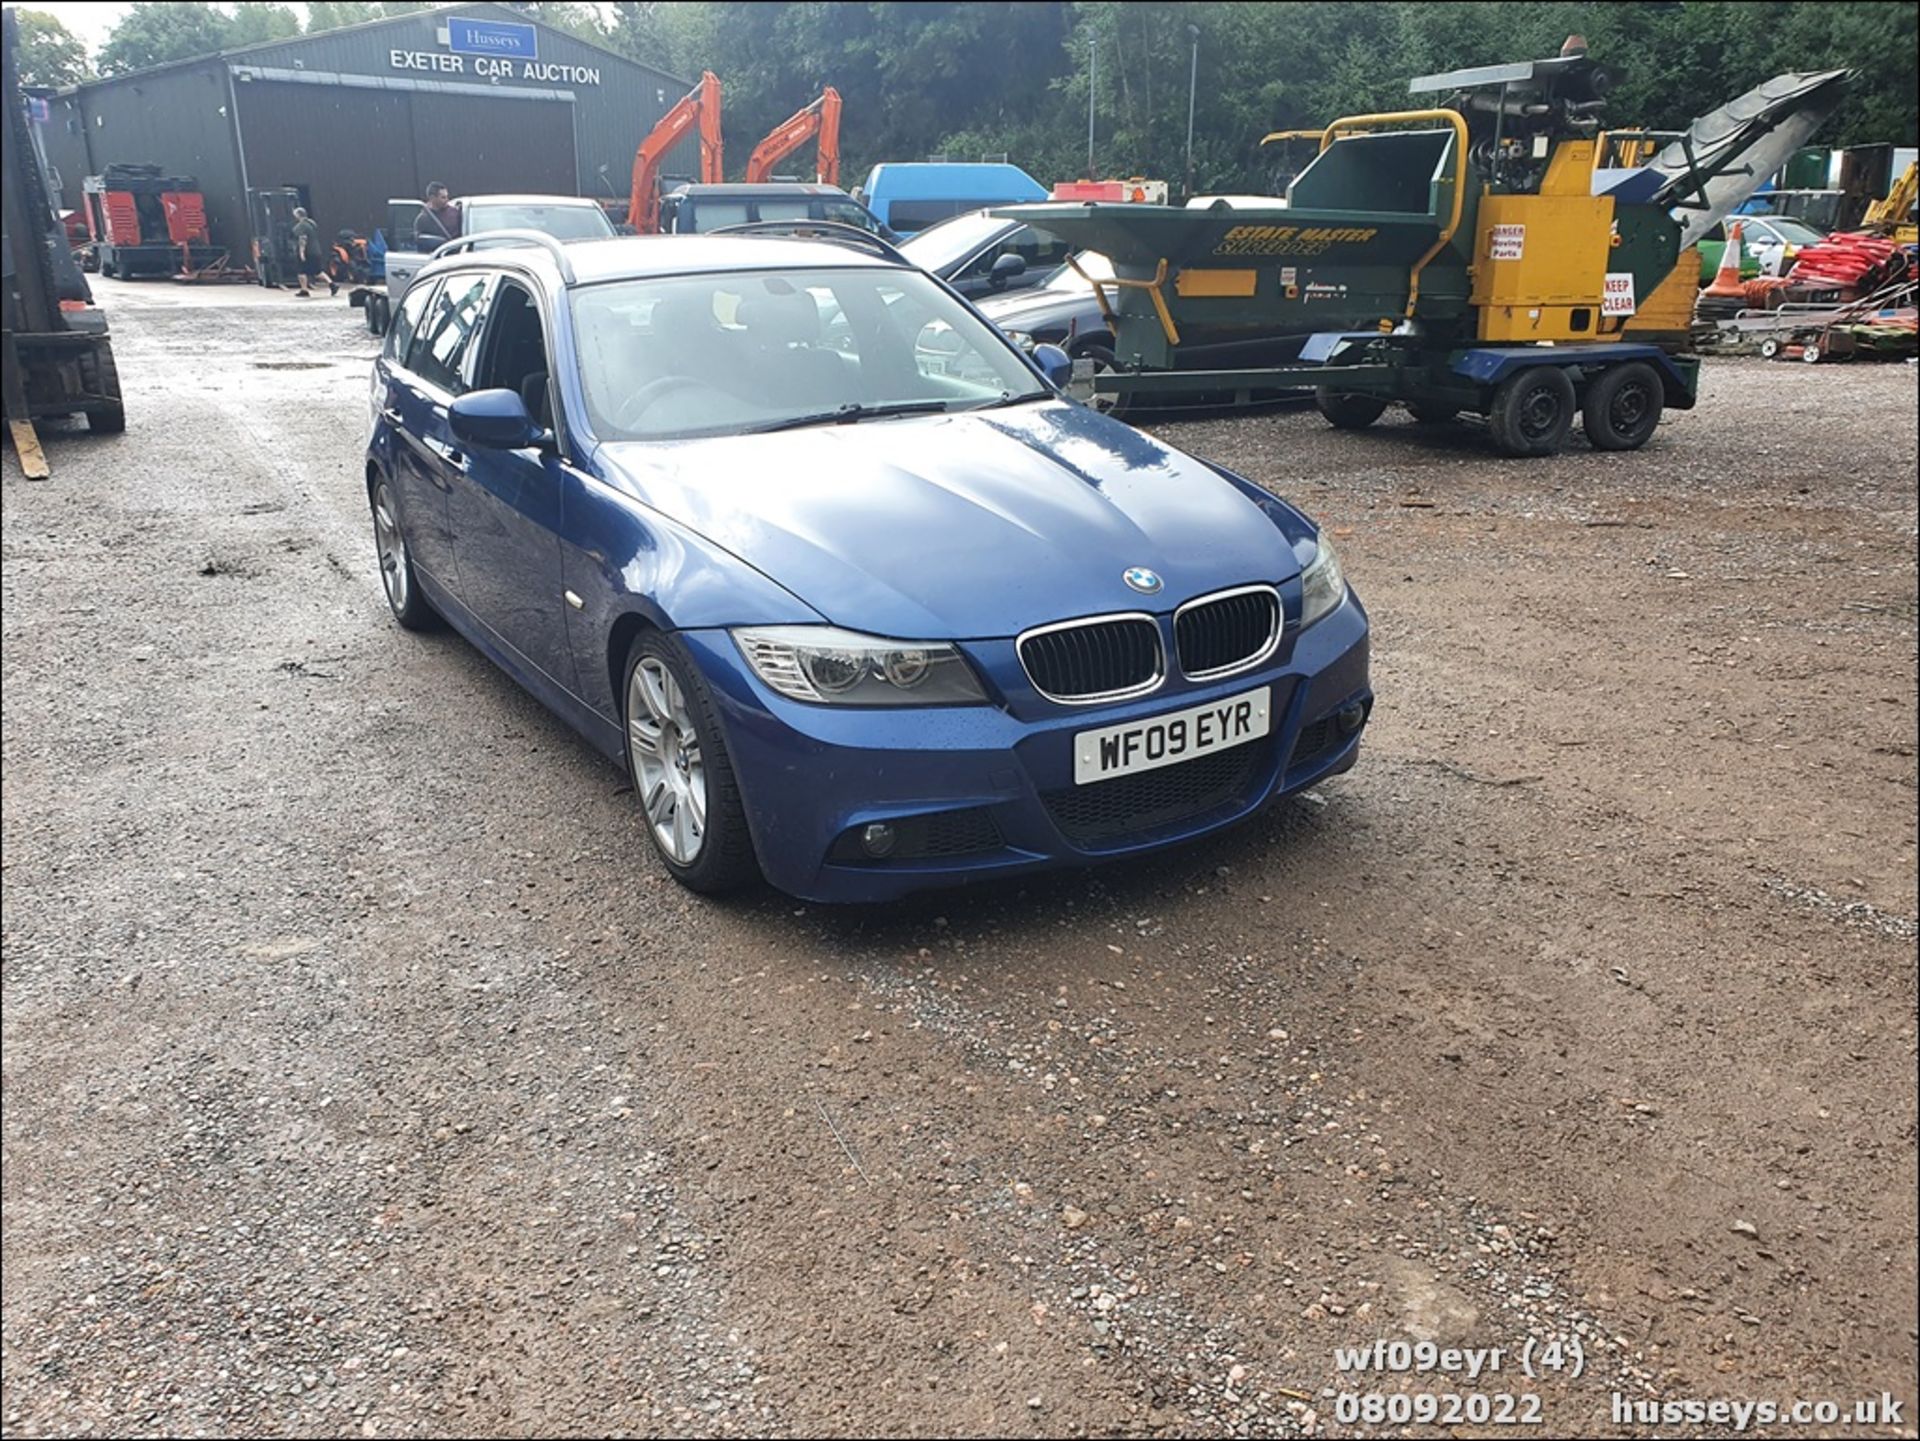 09/09 BMW 318I M SPORT TOURING - 1995cc 5dr Estate (Blue, 122k) - Image 4 of 47